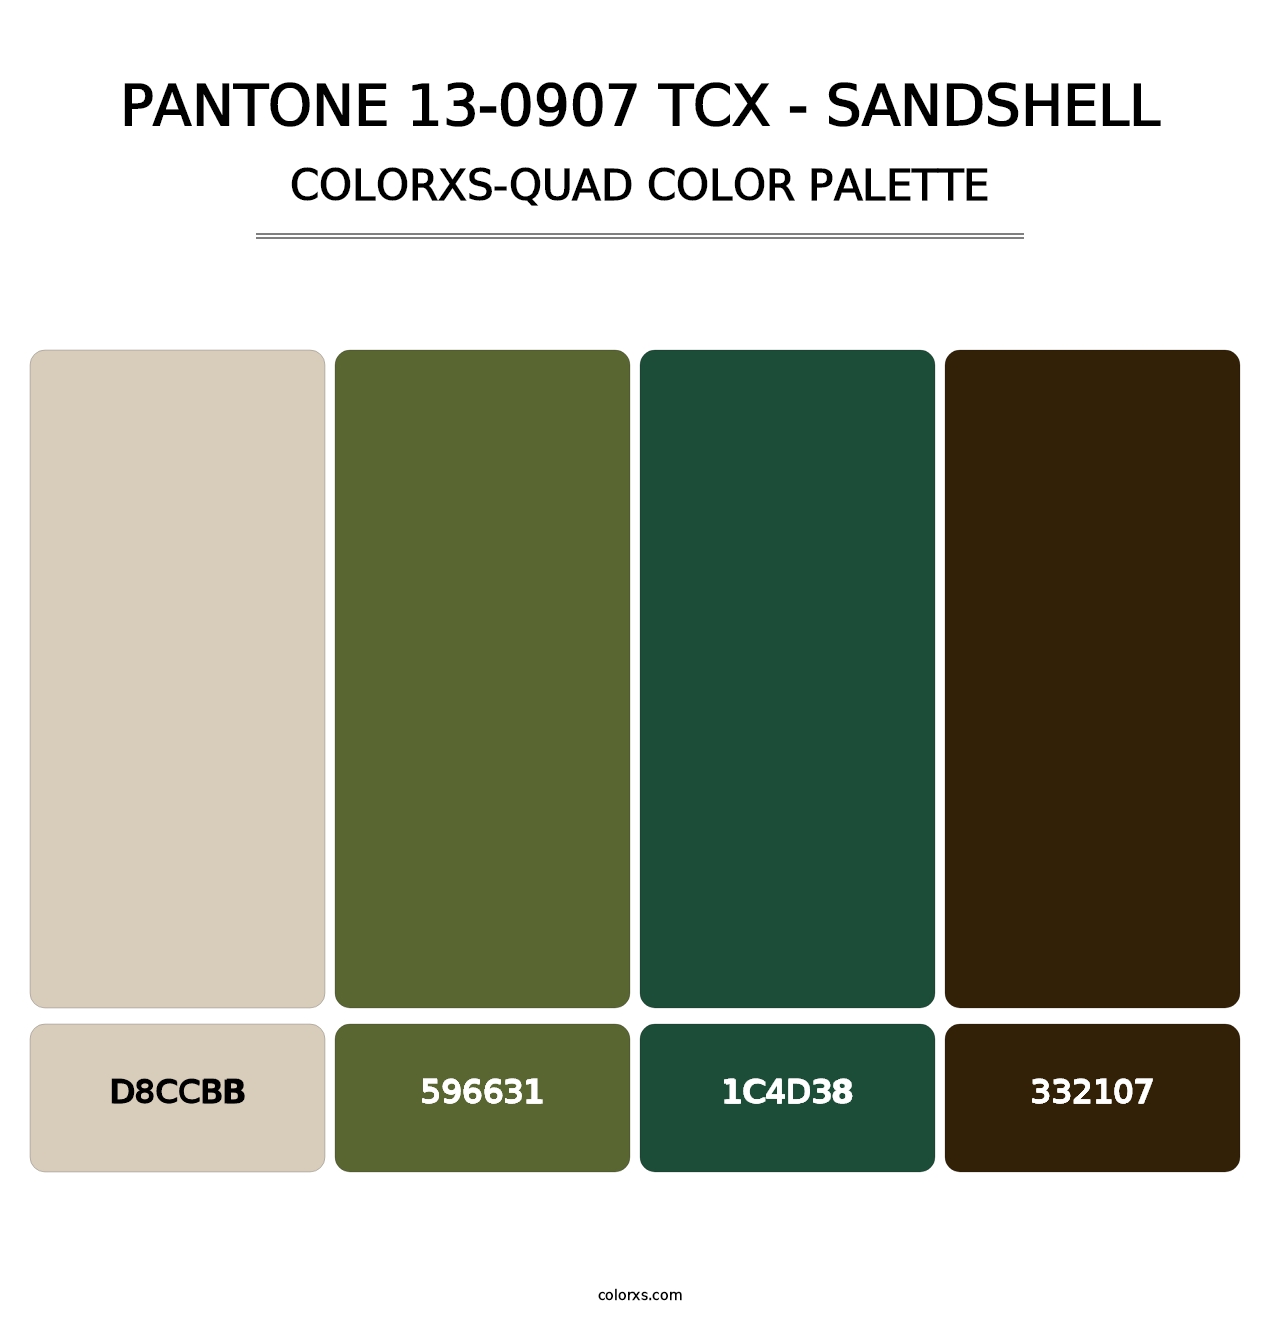 PANTONE 13-0907 TCX - Sandshell - Colorxs Quad Palette